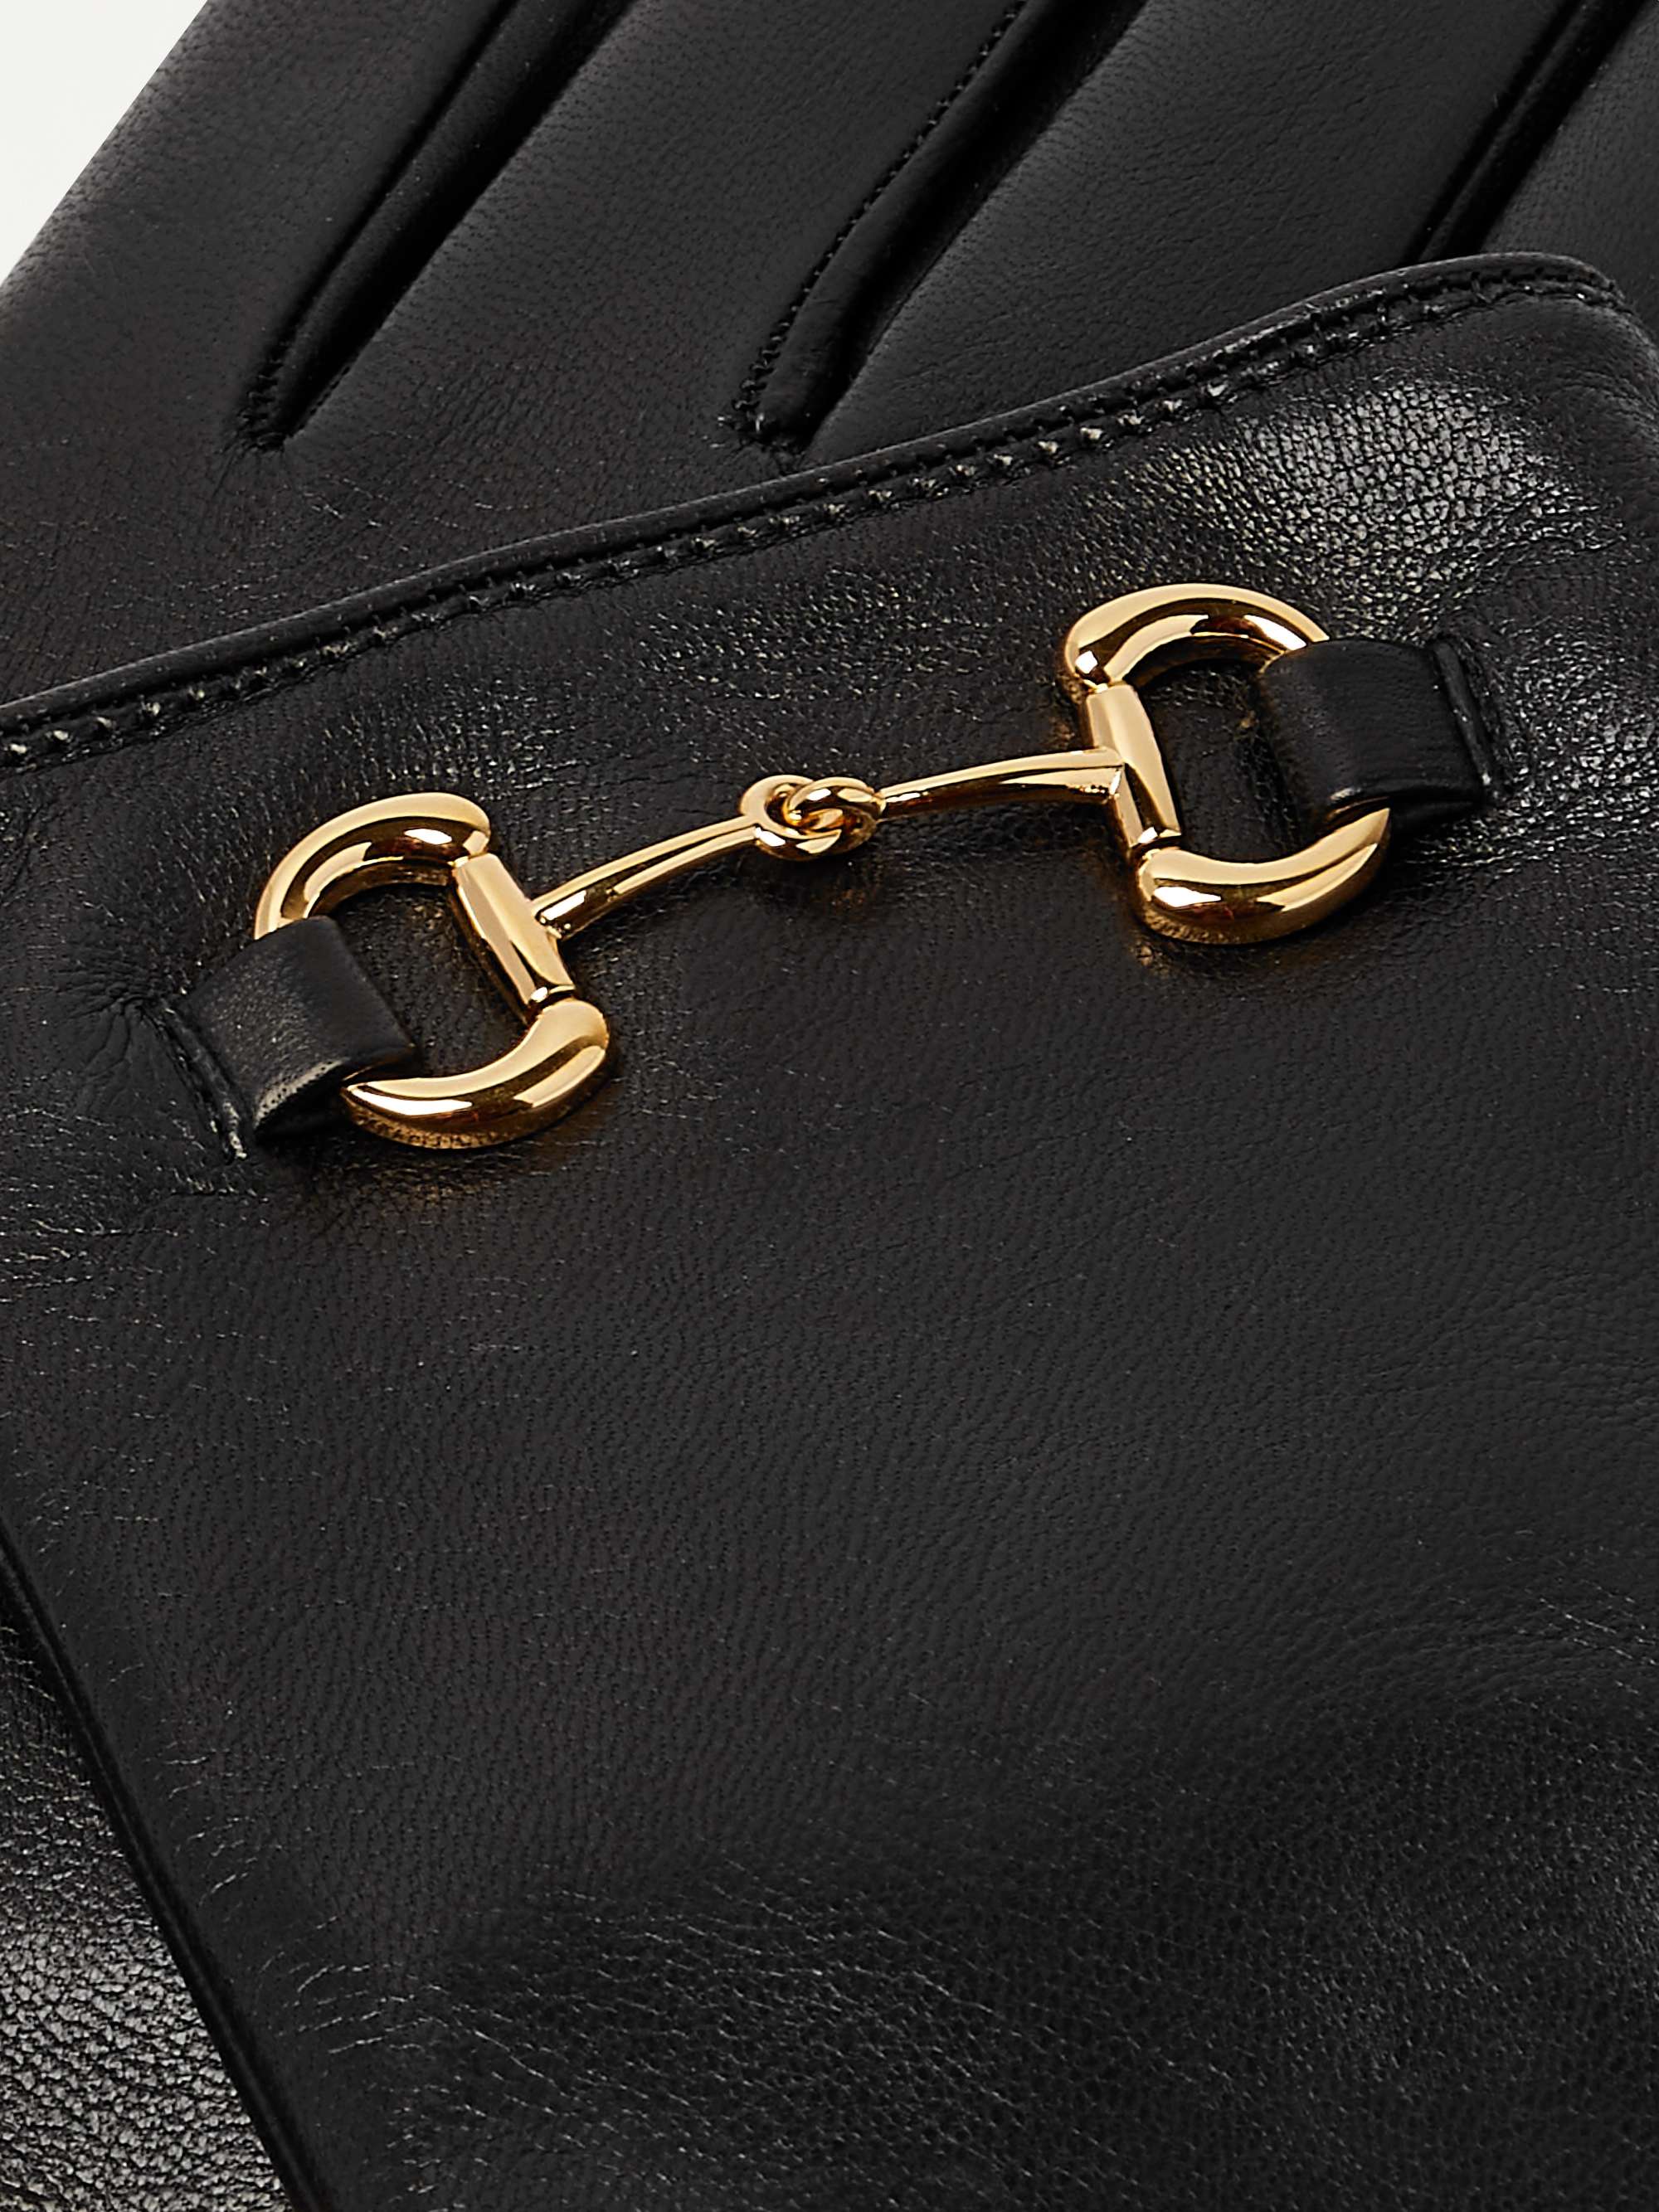 GUCCI Horsebit Cashmere-Lined Leather Gloves for Men | MR PORTER